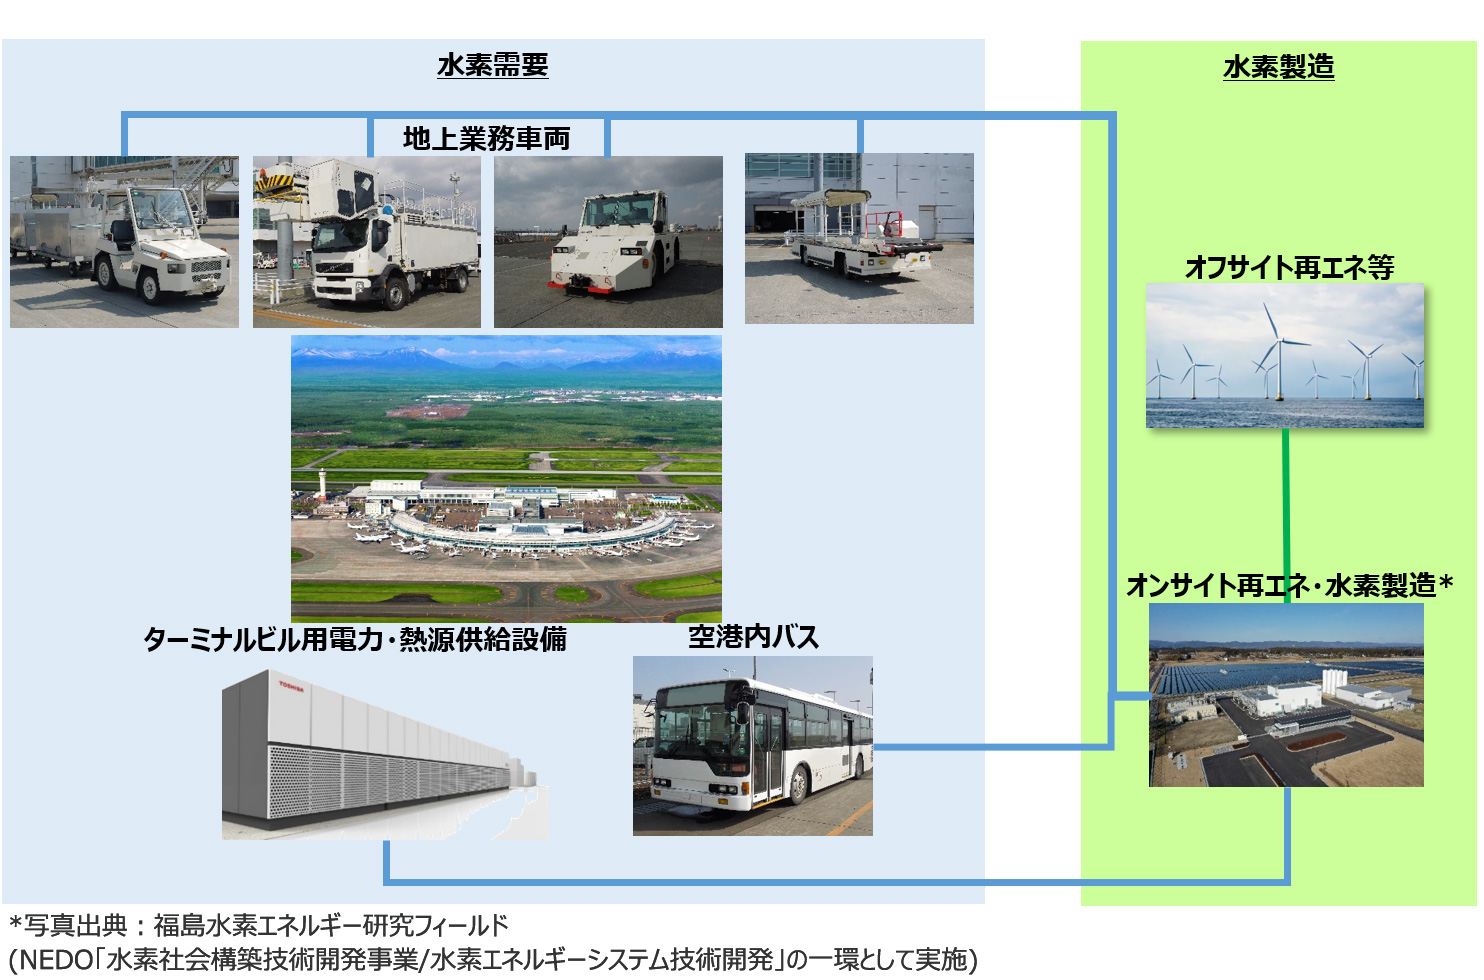 新千歳空港における水素製造・利活用のイメージ図